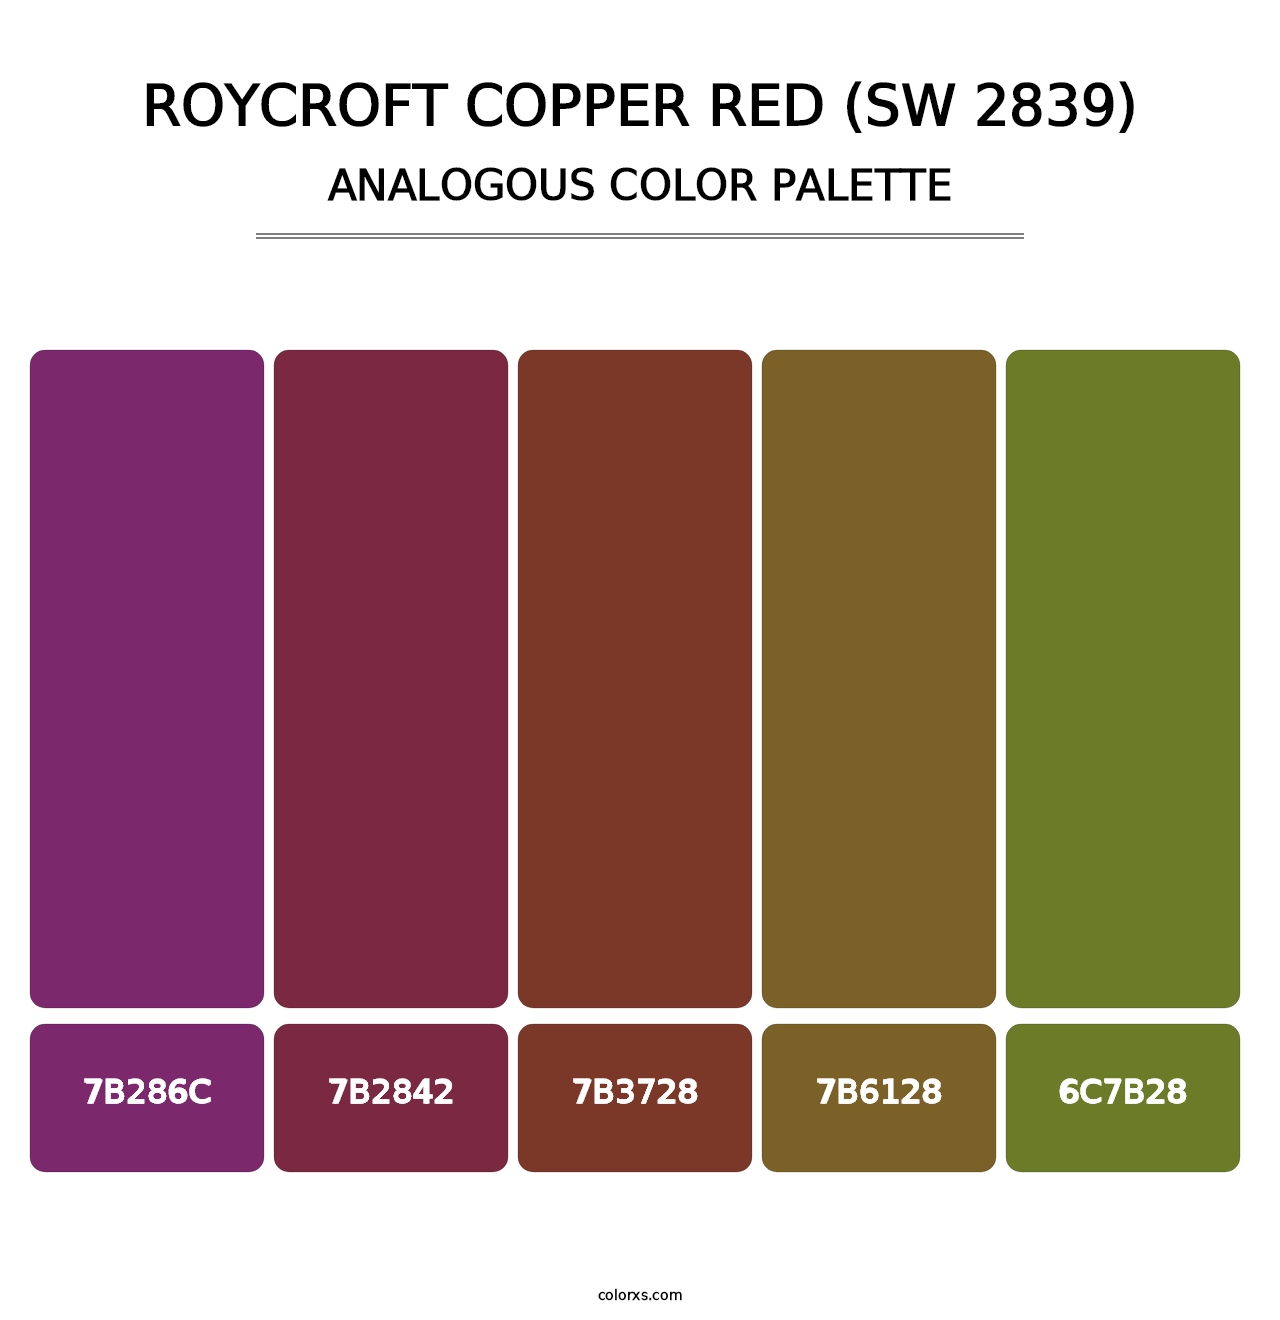 Roycroft Copper Red (SW 2839) - Analogous Color Palette